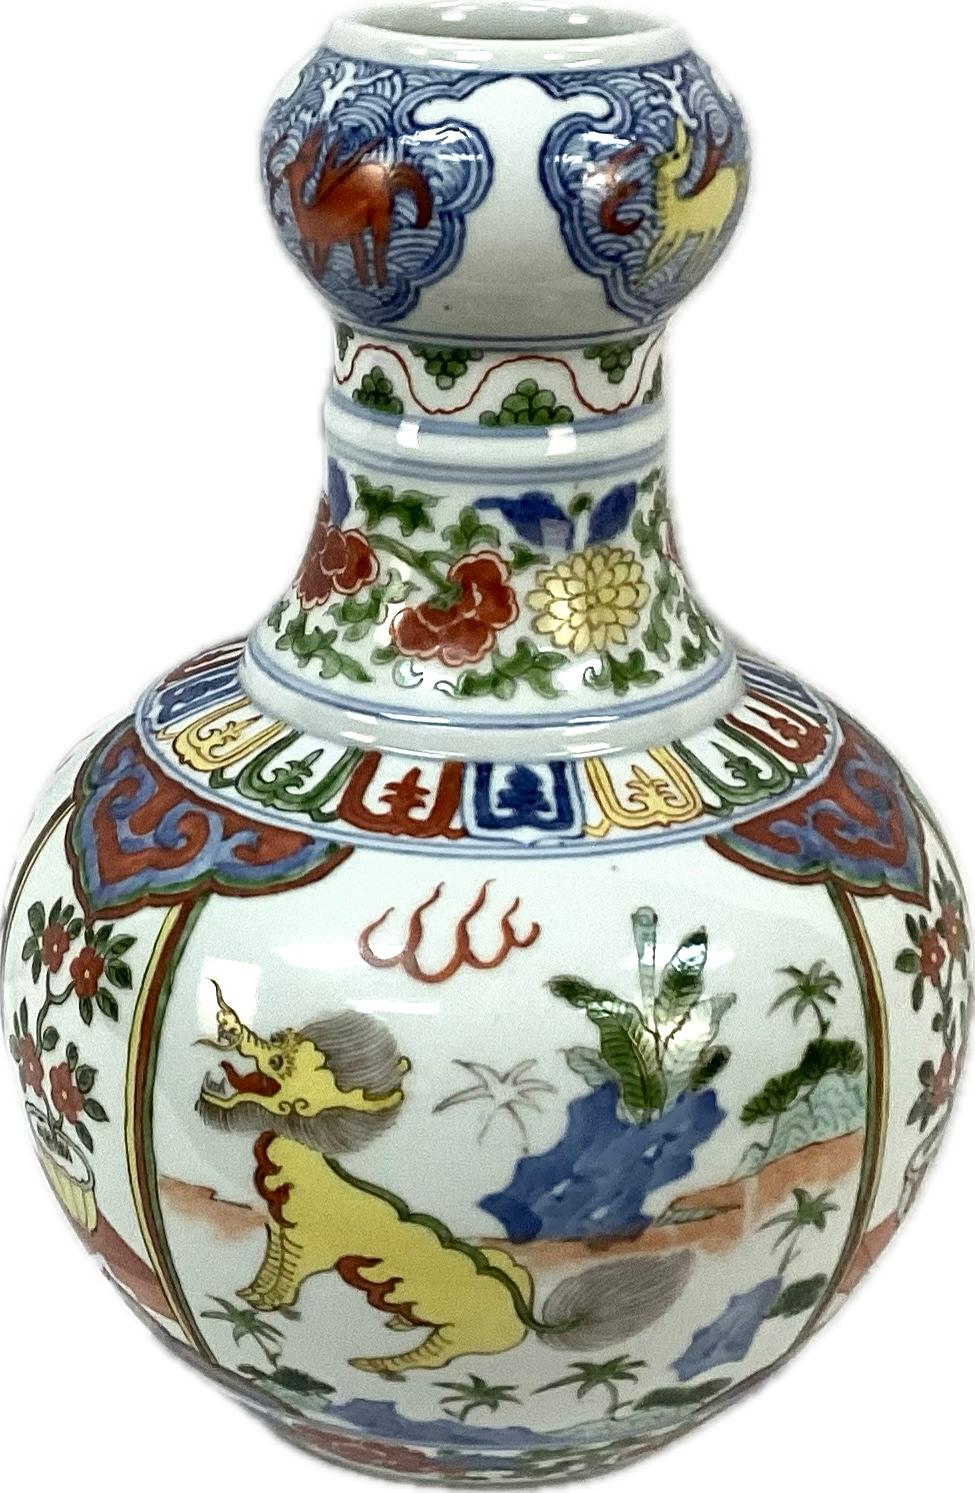  Vase dragon chinois en porcelaine en forme de gourde aux riches couleurs de rouge, bleu, vert et jaune sur fond blanc. Les dragons multicolores sont accompagnés d'une flore et de fleurs. Marques chinoises sur le fond. En très bon état.